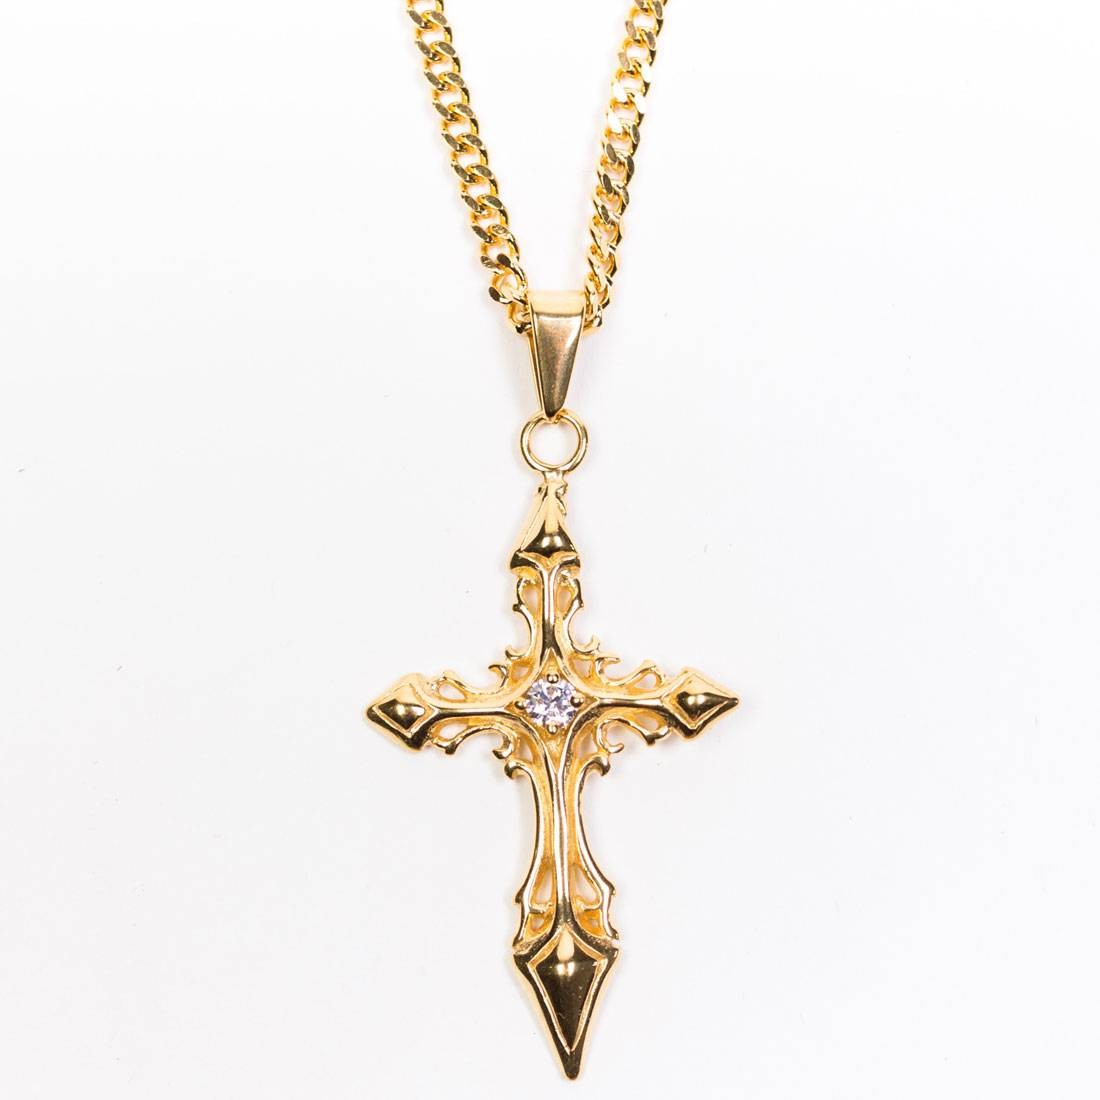 Veritas Aequitas Regno Cross Necklace gold